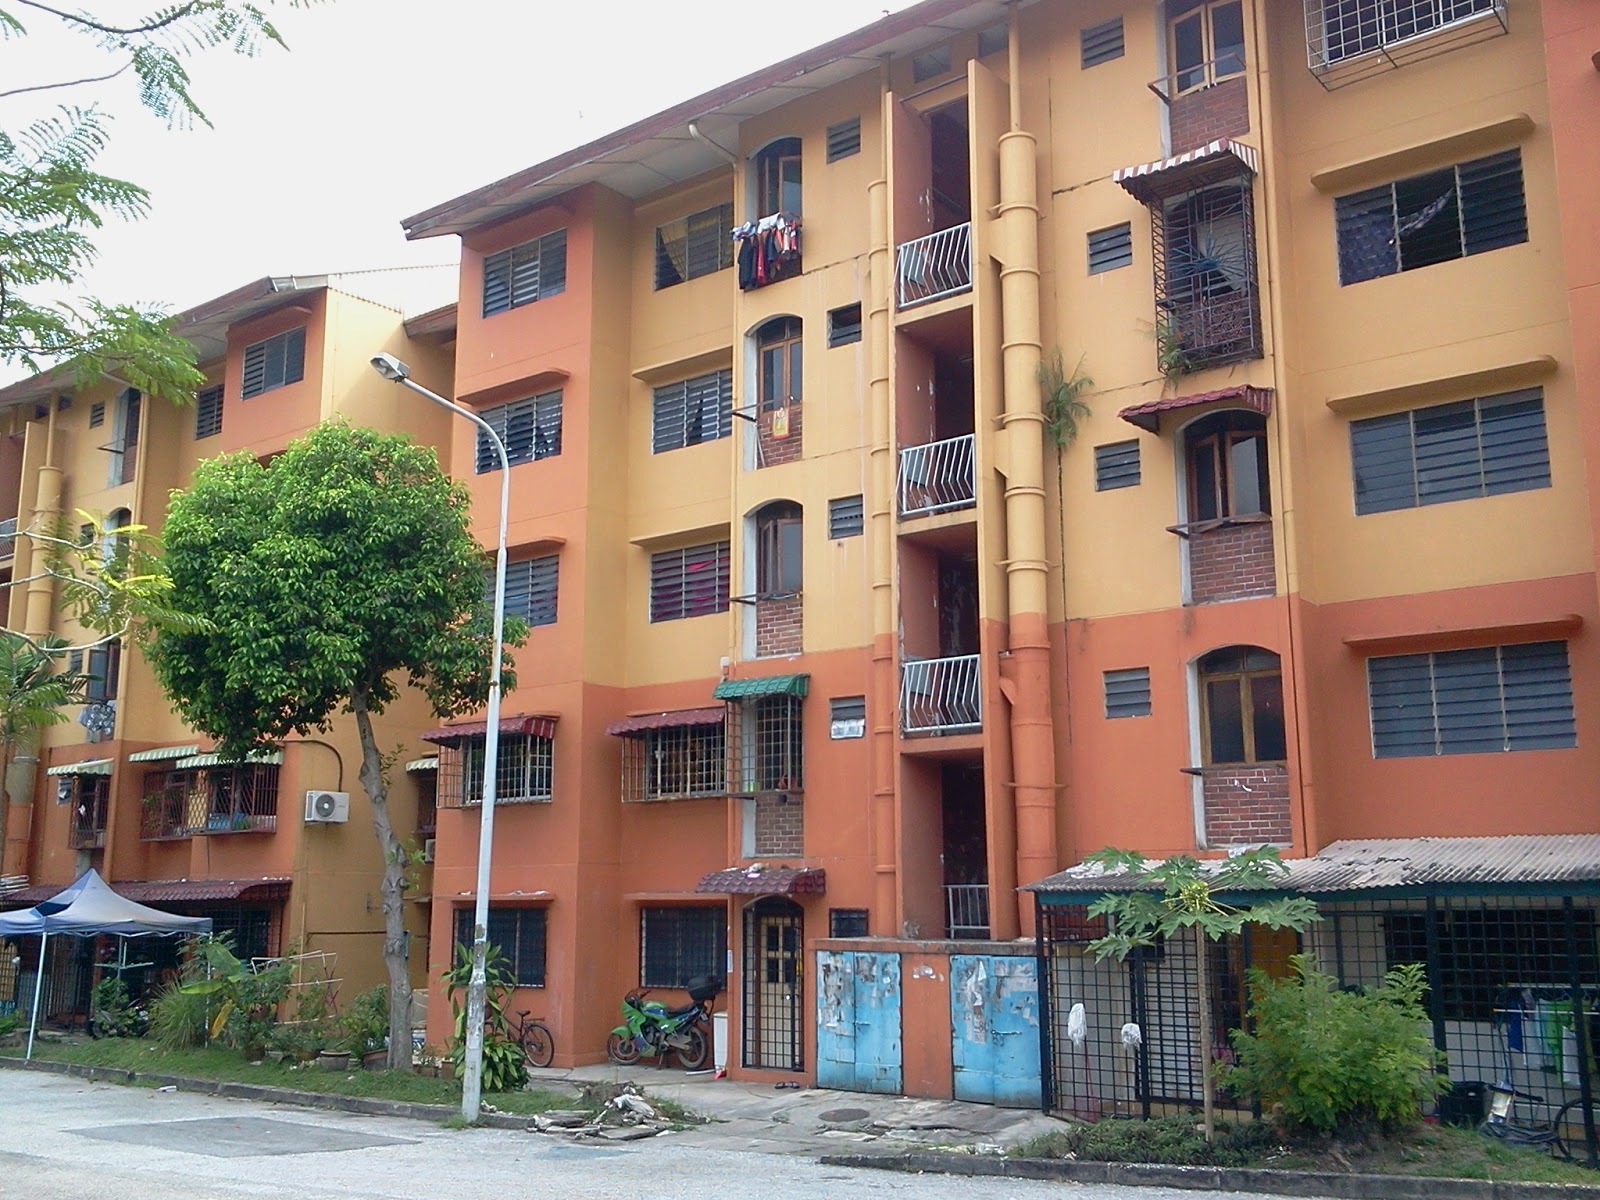  Apartment Untuk Dijual Di Shah Alam for Large Space